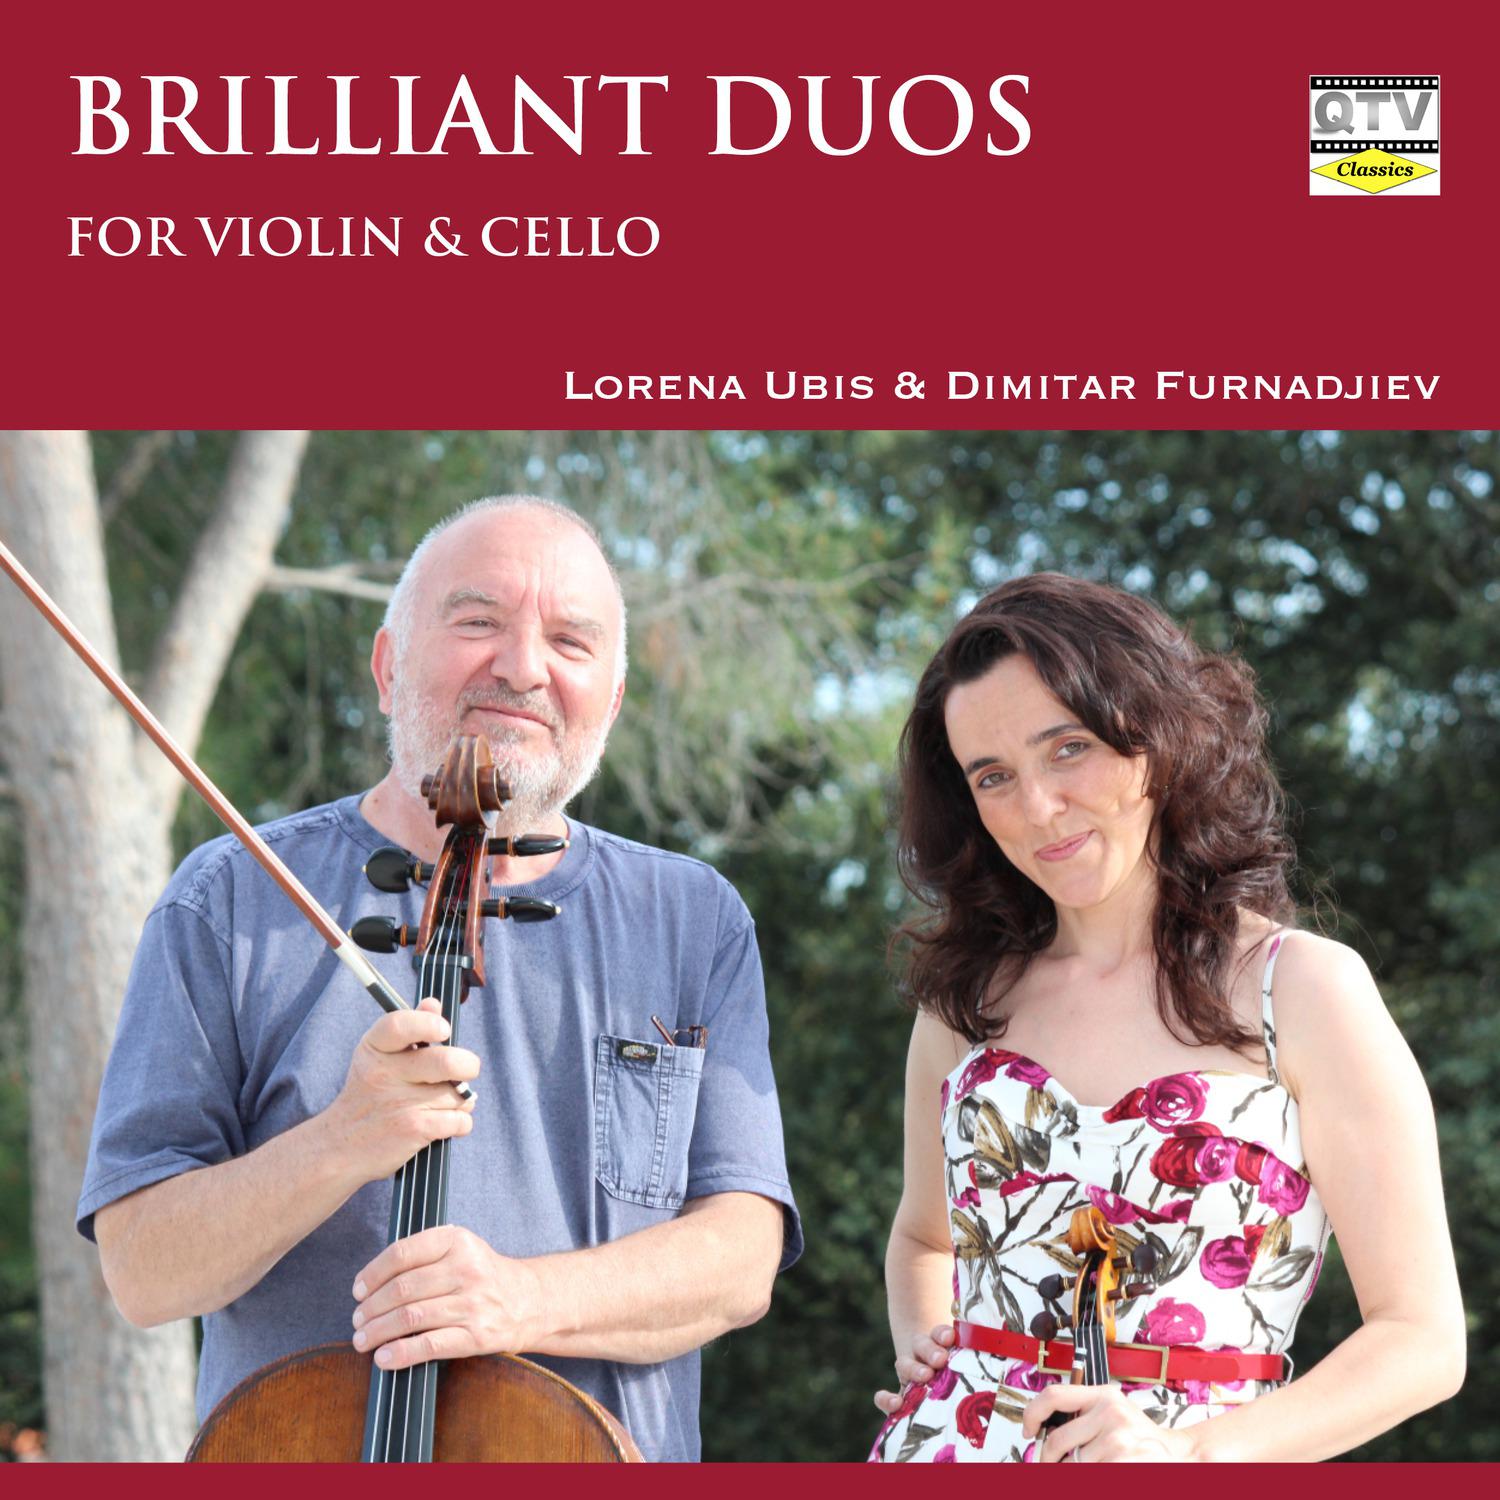 Duets for Violin and Cello, Op. 6, No. 2: I. Allegro con brio